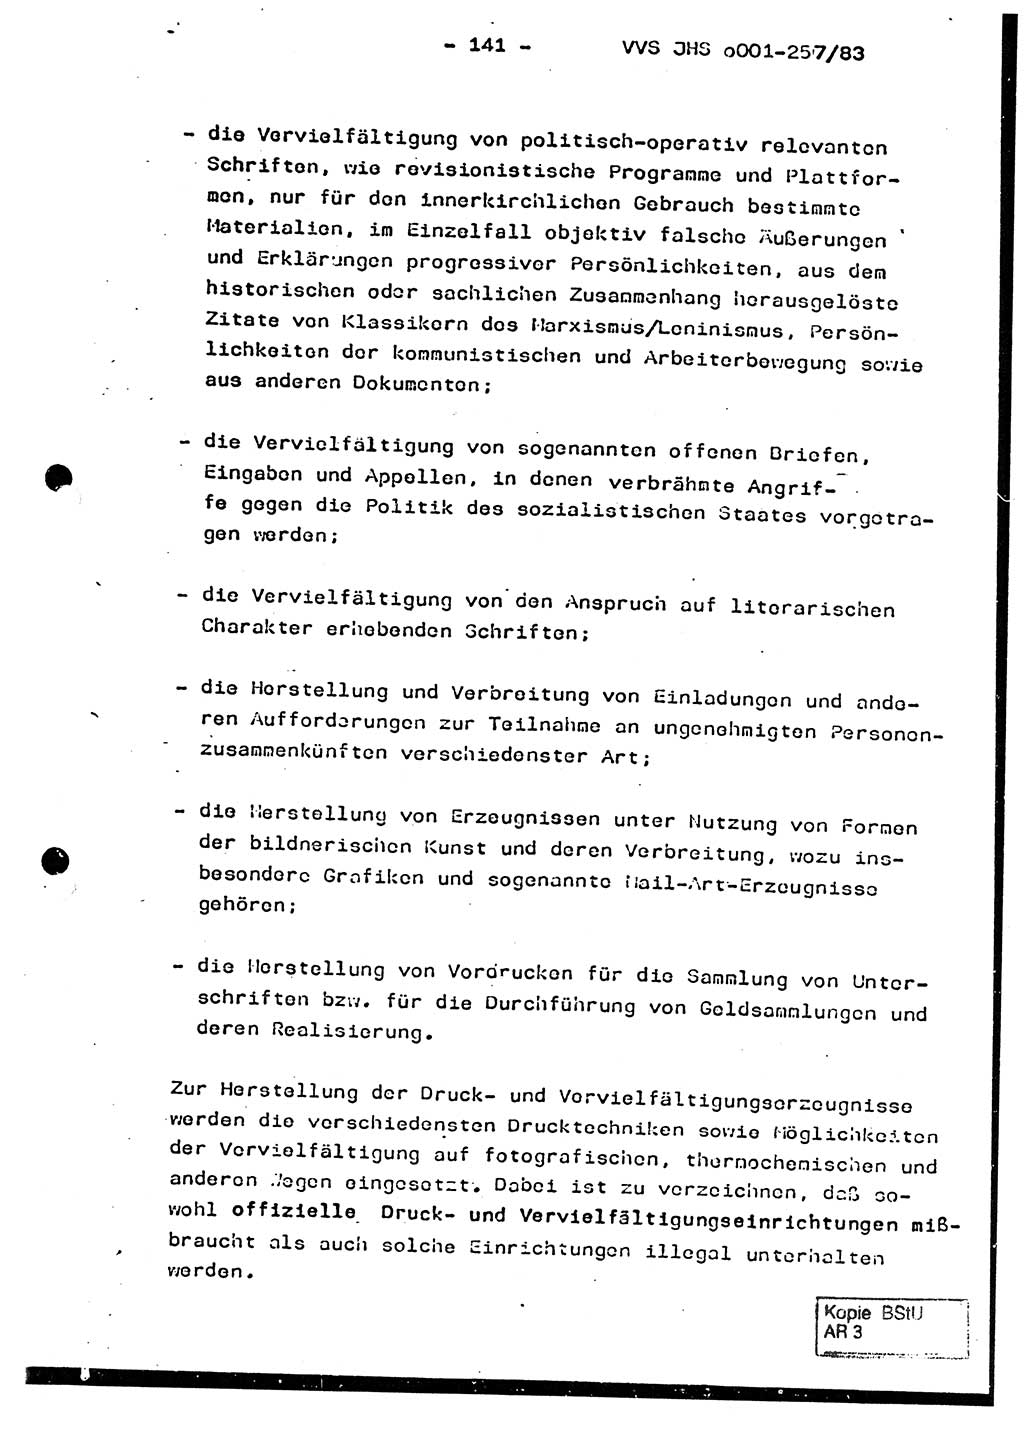 Dissertation, Oberst Helmut Lubas (BV Mdg.), Oberstleutnant Manfred Eschberger (HA IX), Oberleutnant Hans-Jürgen Ludwig (JHS), Ministerium für Staatssicherheit (MfS) [Deutsche Demokratische Republik (DDR)], Juristische Hochschule (JHS), Vertrauliche Verschlußsache (VVS) o001-257/83, Potsdam 1983, Seite 141 (Diss. MfS DDR JHS VVS o001-257/83 1983, S. 141)